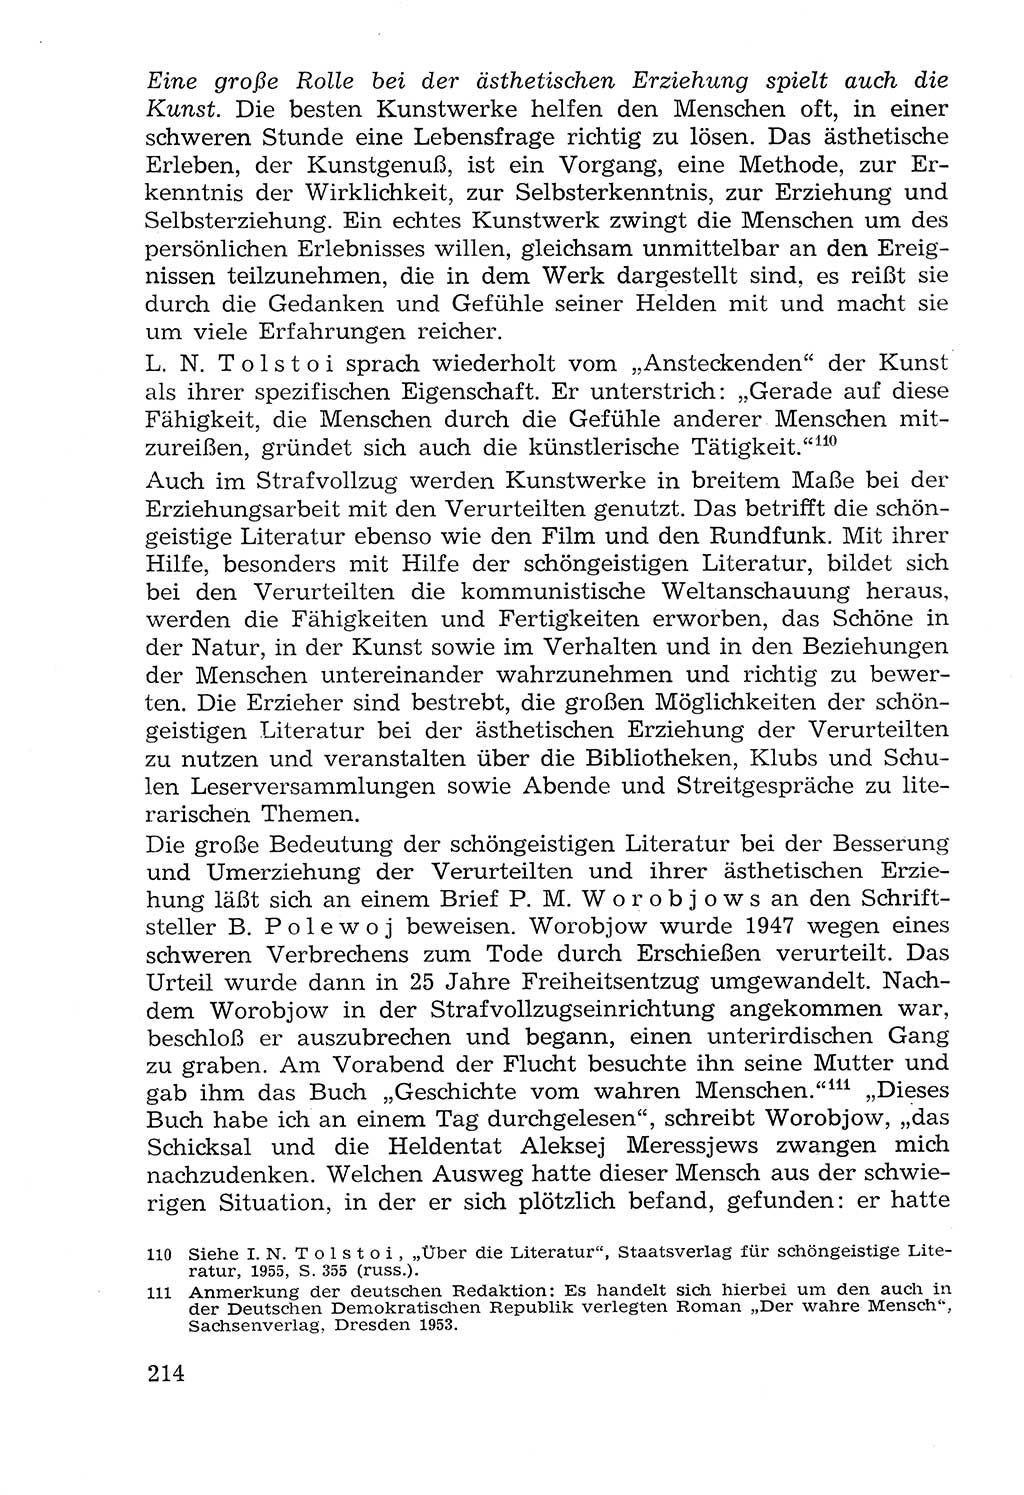 Lehrbuch der Strafvollzugspädagogik [Deutsche Demokratische Republik (DDR)] 1969, Seite 214 (Lb. SV-Pd. DDR 1969, S. 214)